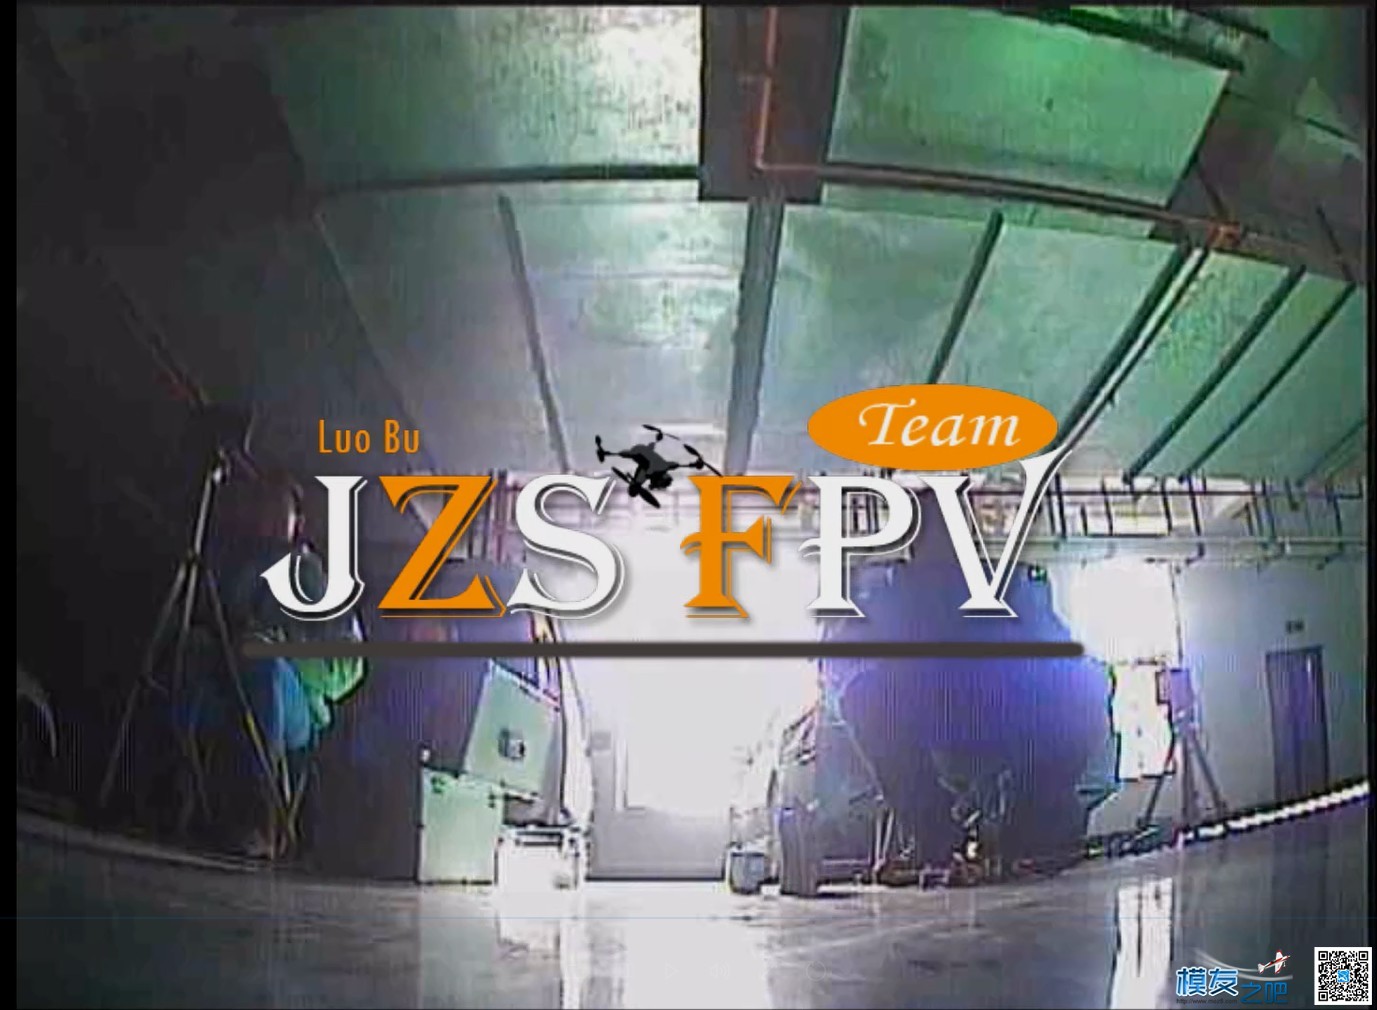 萝卜周日QAV210穿越车库首飞,DVR录制（JZS FPV） 轰20首飞成功,轰20首飞图,首飞什么意思,轰20首飞 作者:义乌大萝卜 9428 